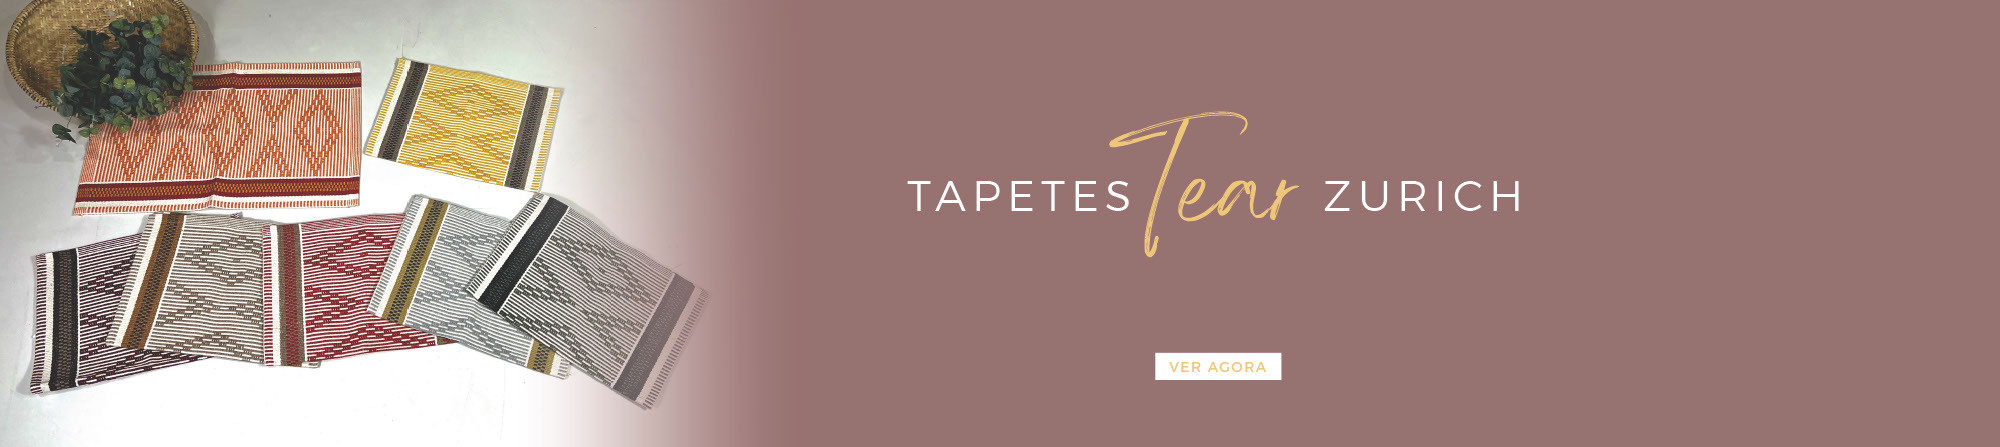 Banner Tapete Tear Zurich - Desktop